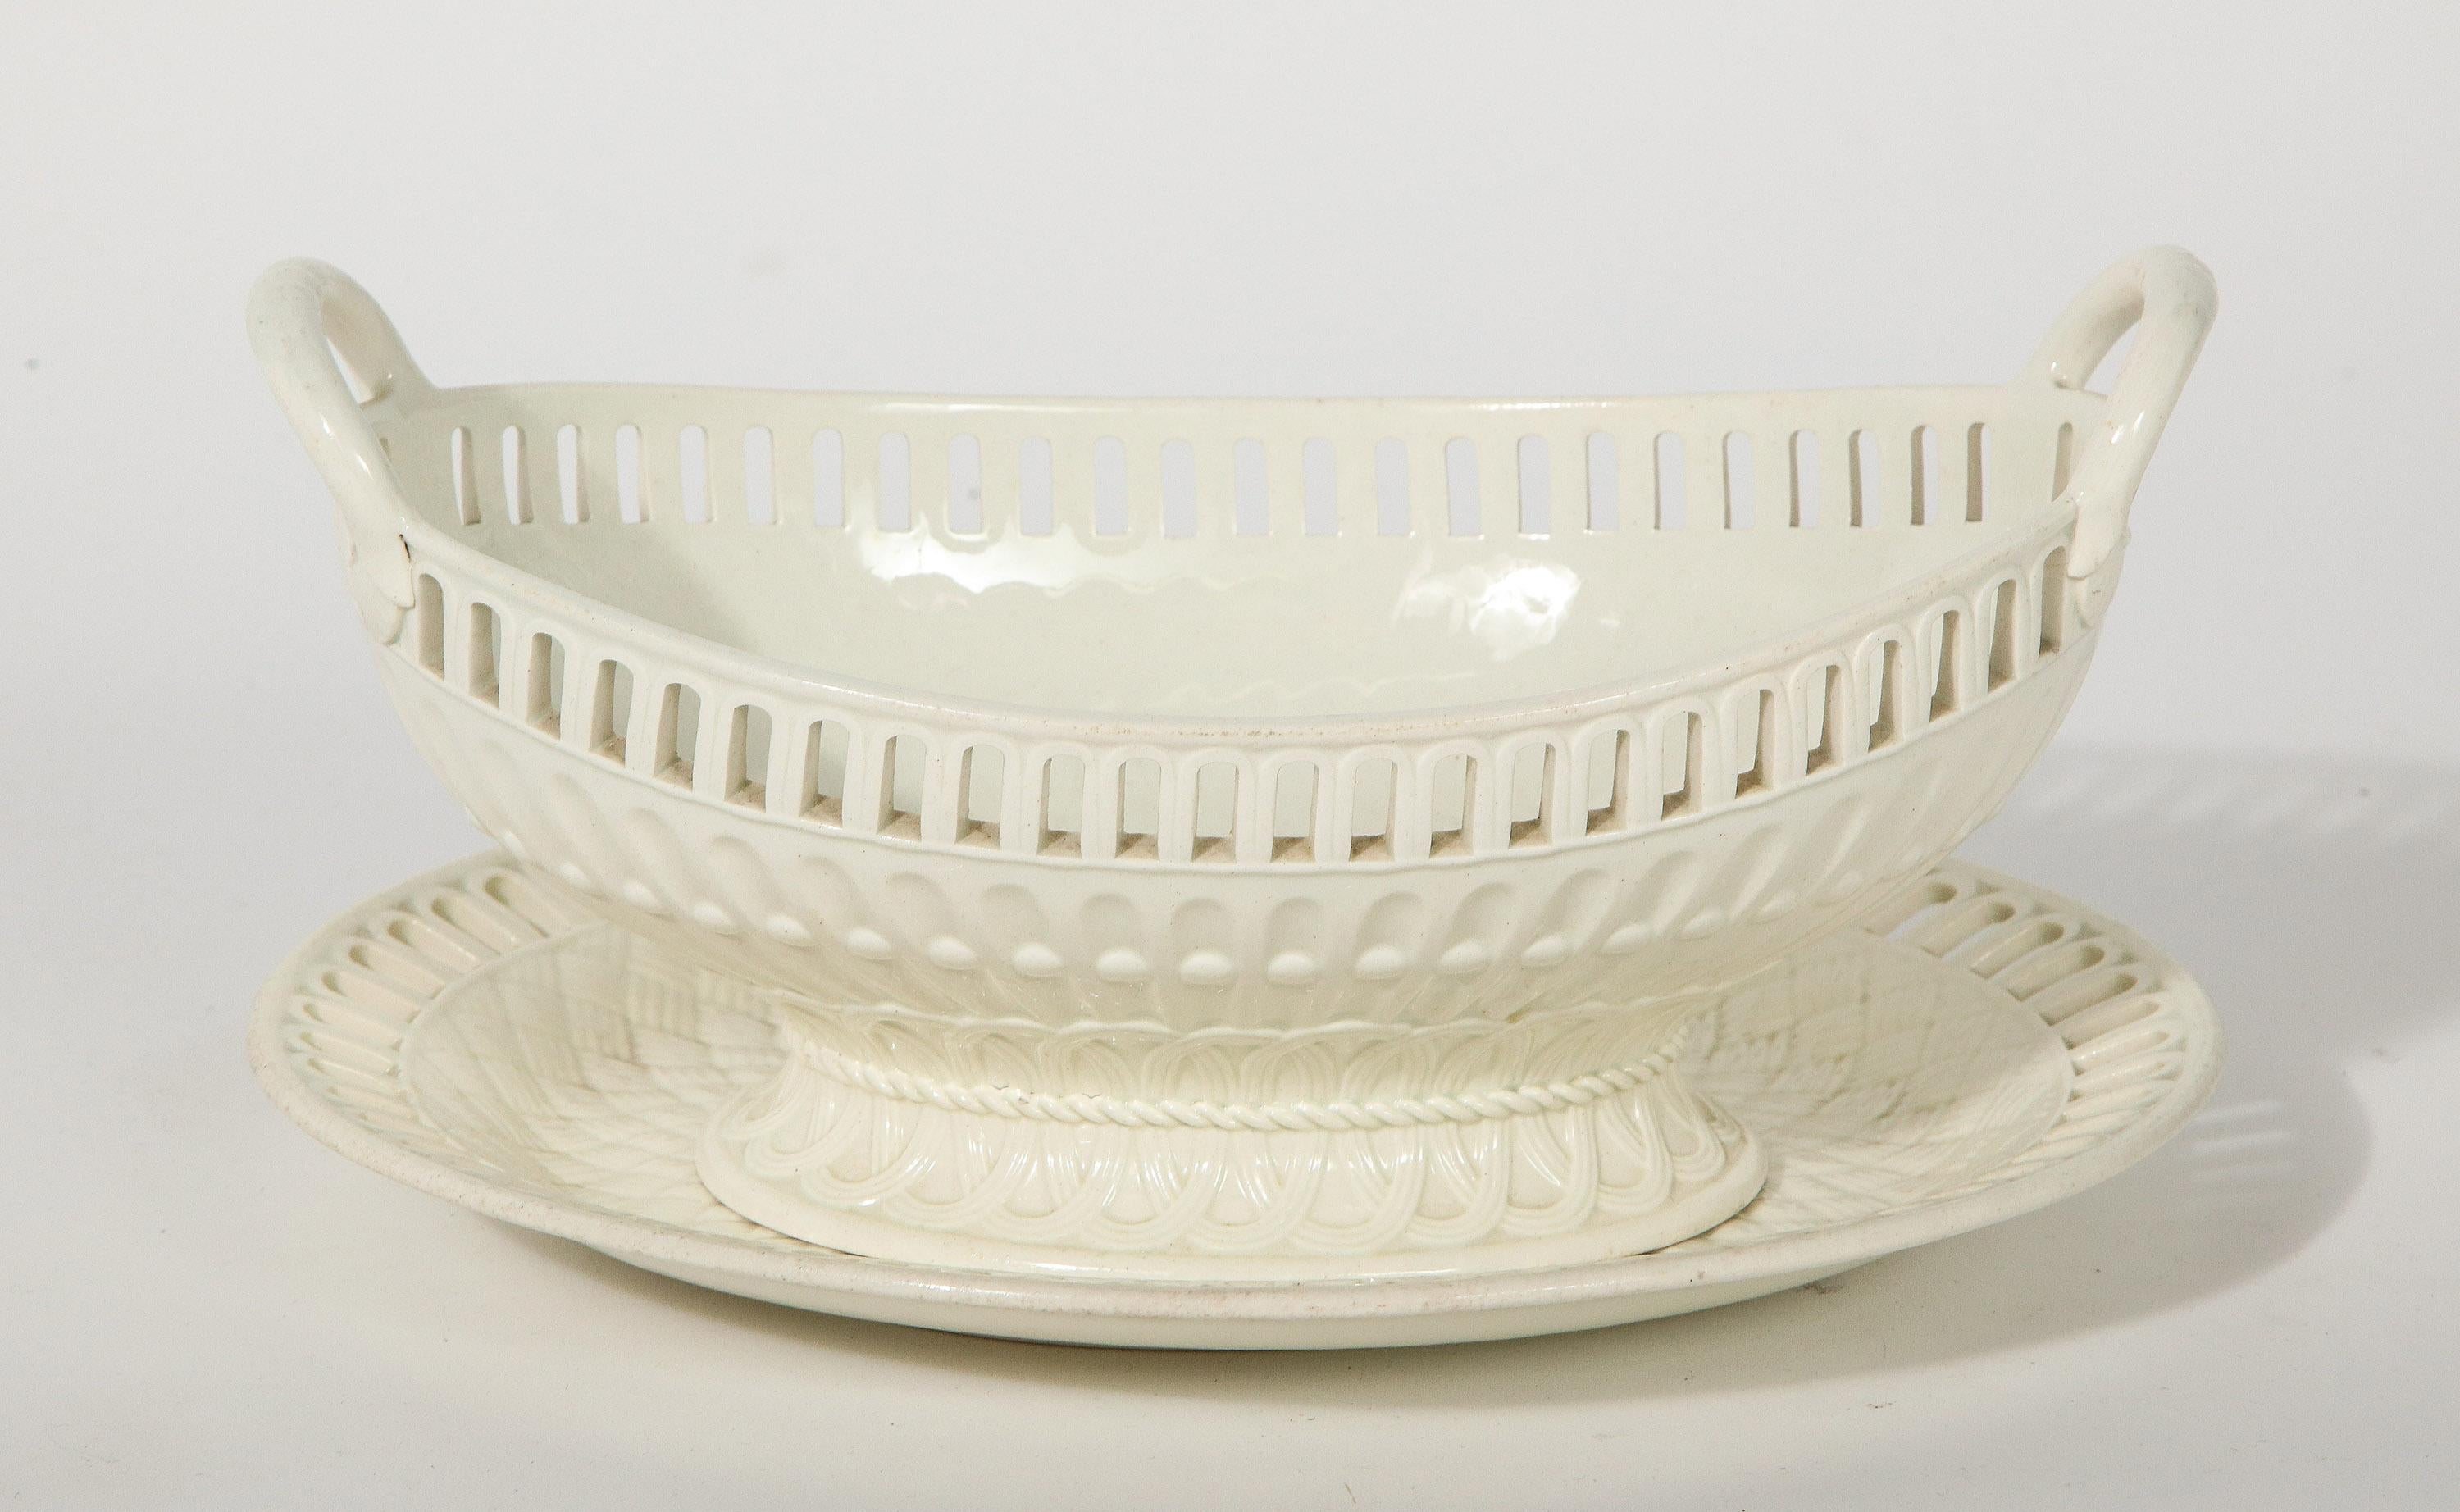 3 Wedgwood-Sahnegeschirr-Servierschalen mit passenden Tellern. Die Schale mit durchbrochenem Rand und geformtem Flechtmuster wird von einem Teller mit ähnlichem Design begleitet.